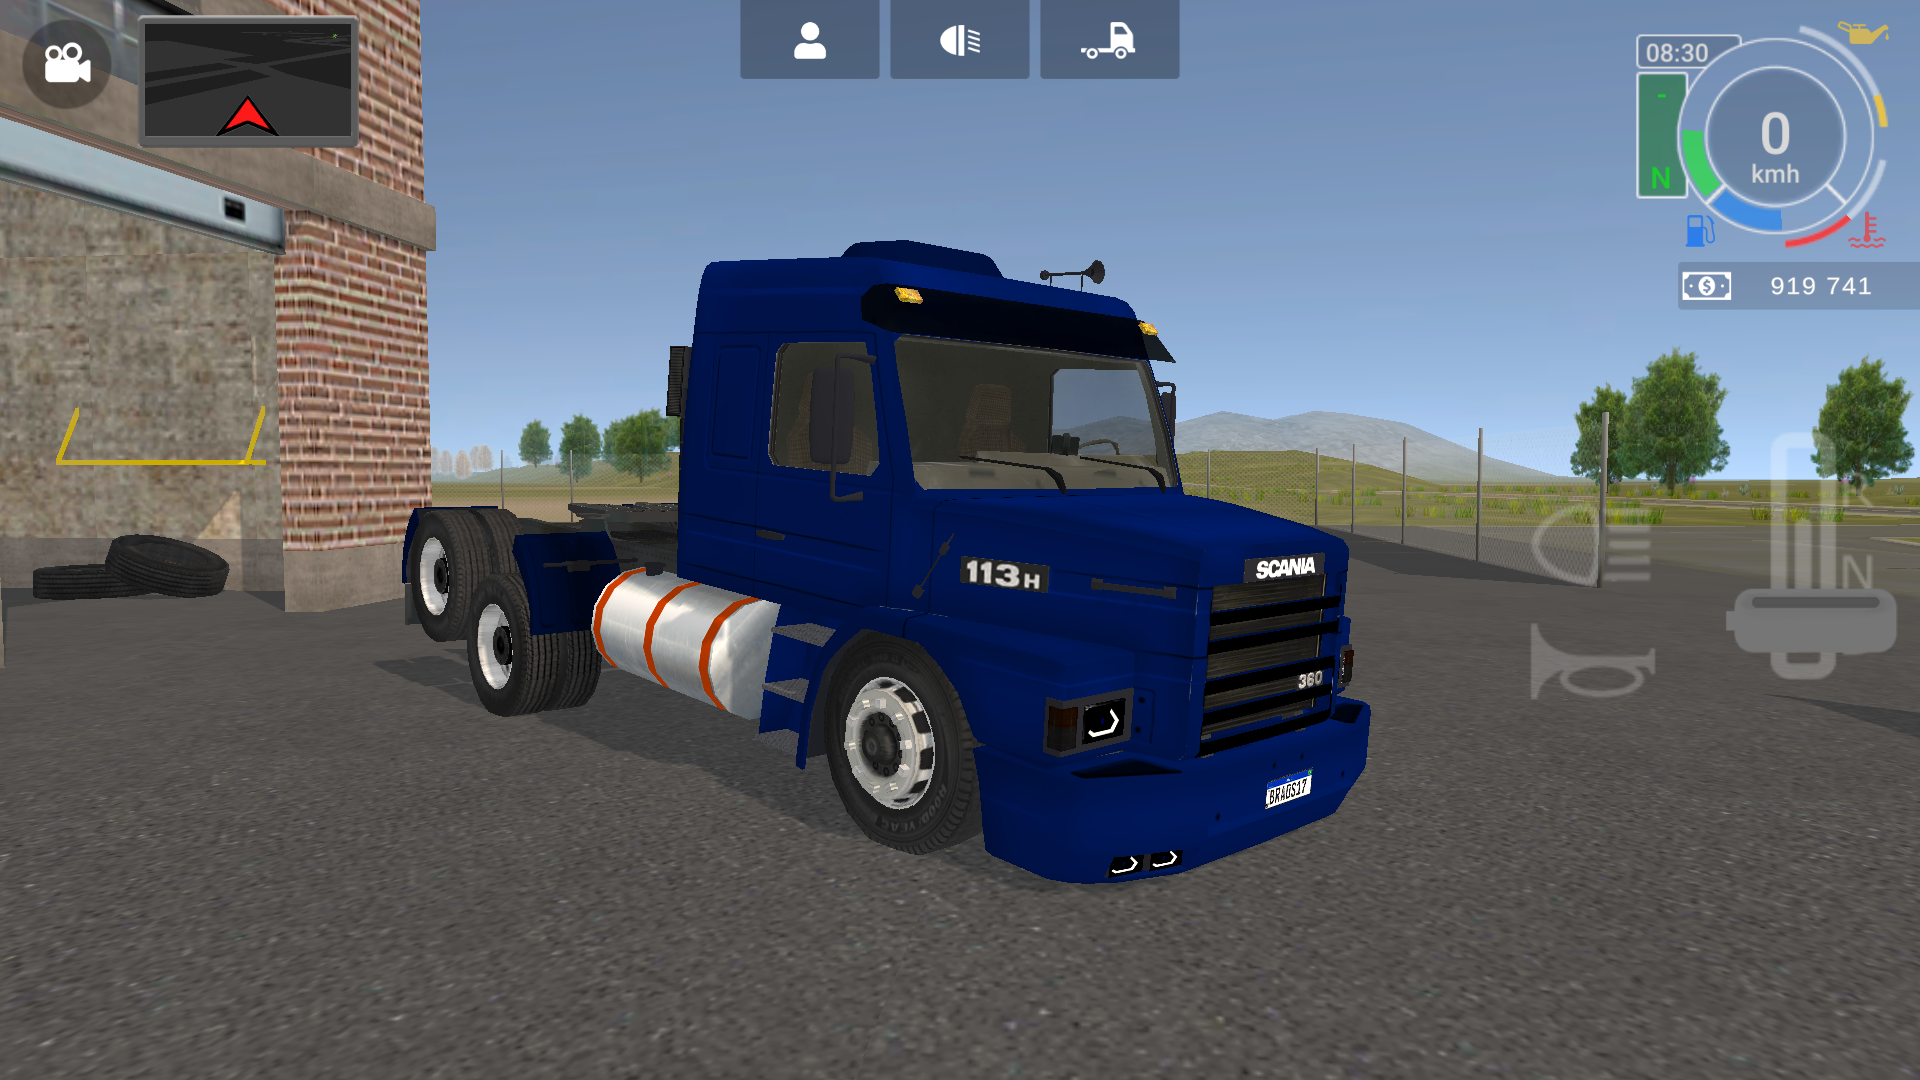 skin grand truck simulator scavia 113h 360